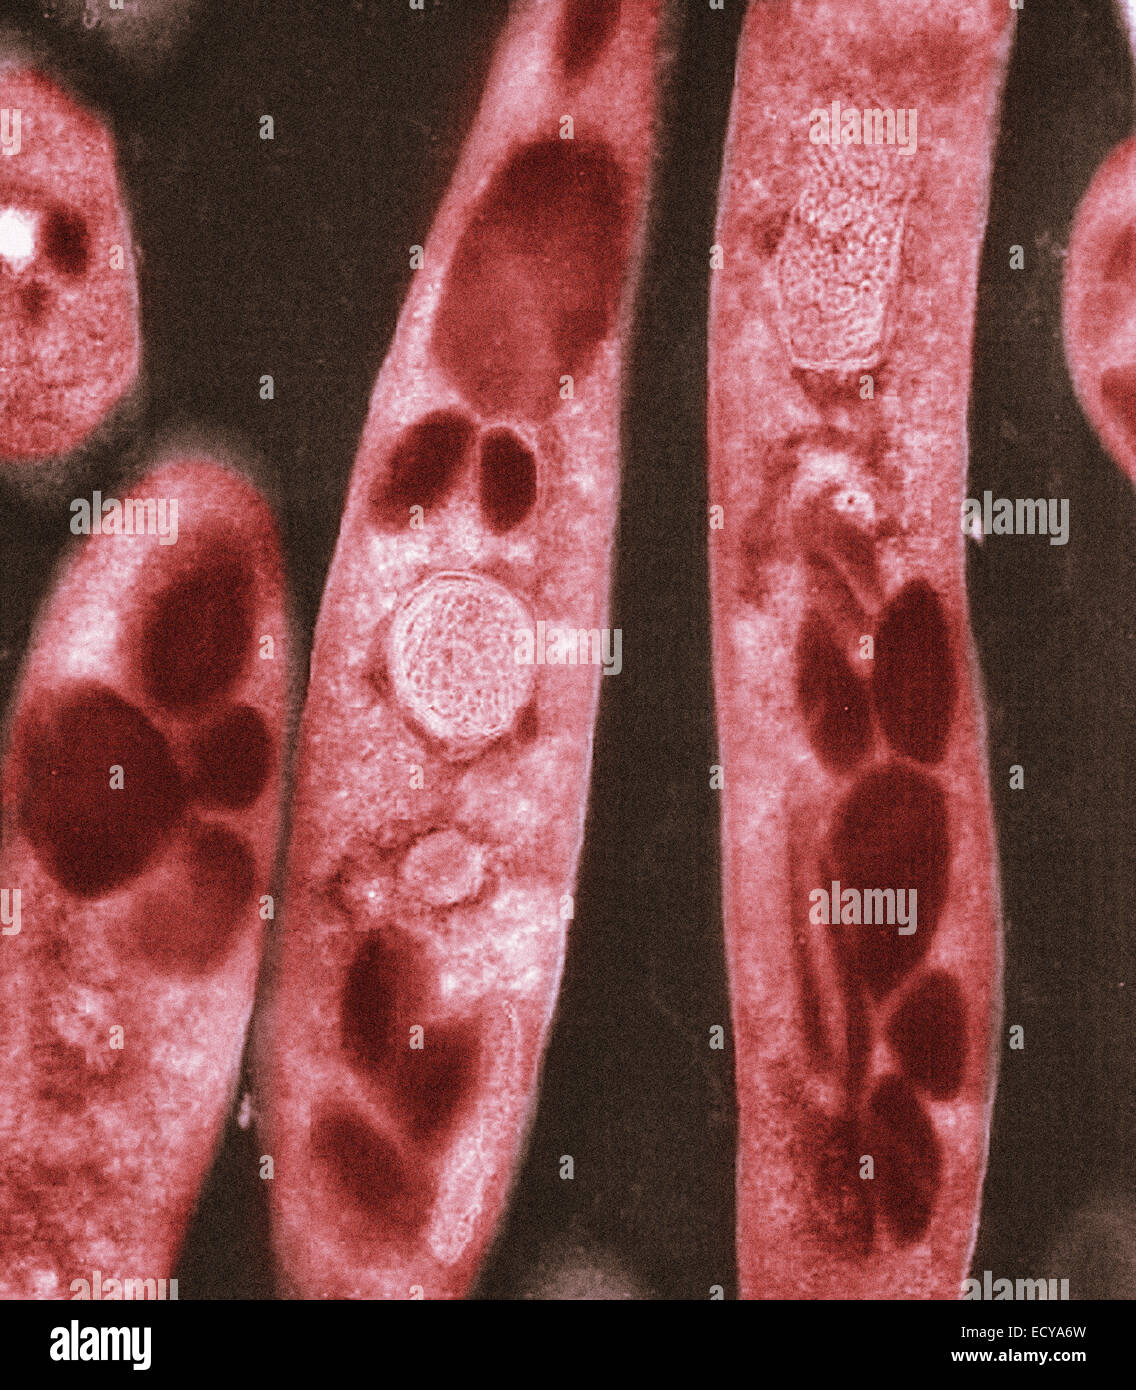 Microfotografía de Bacillus anthracis (carbunco) esporas. Foto de stock